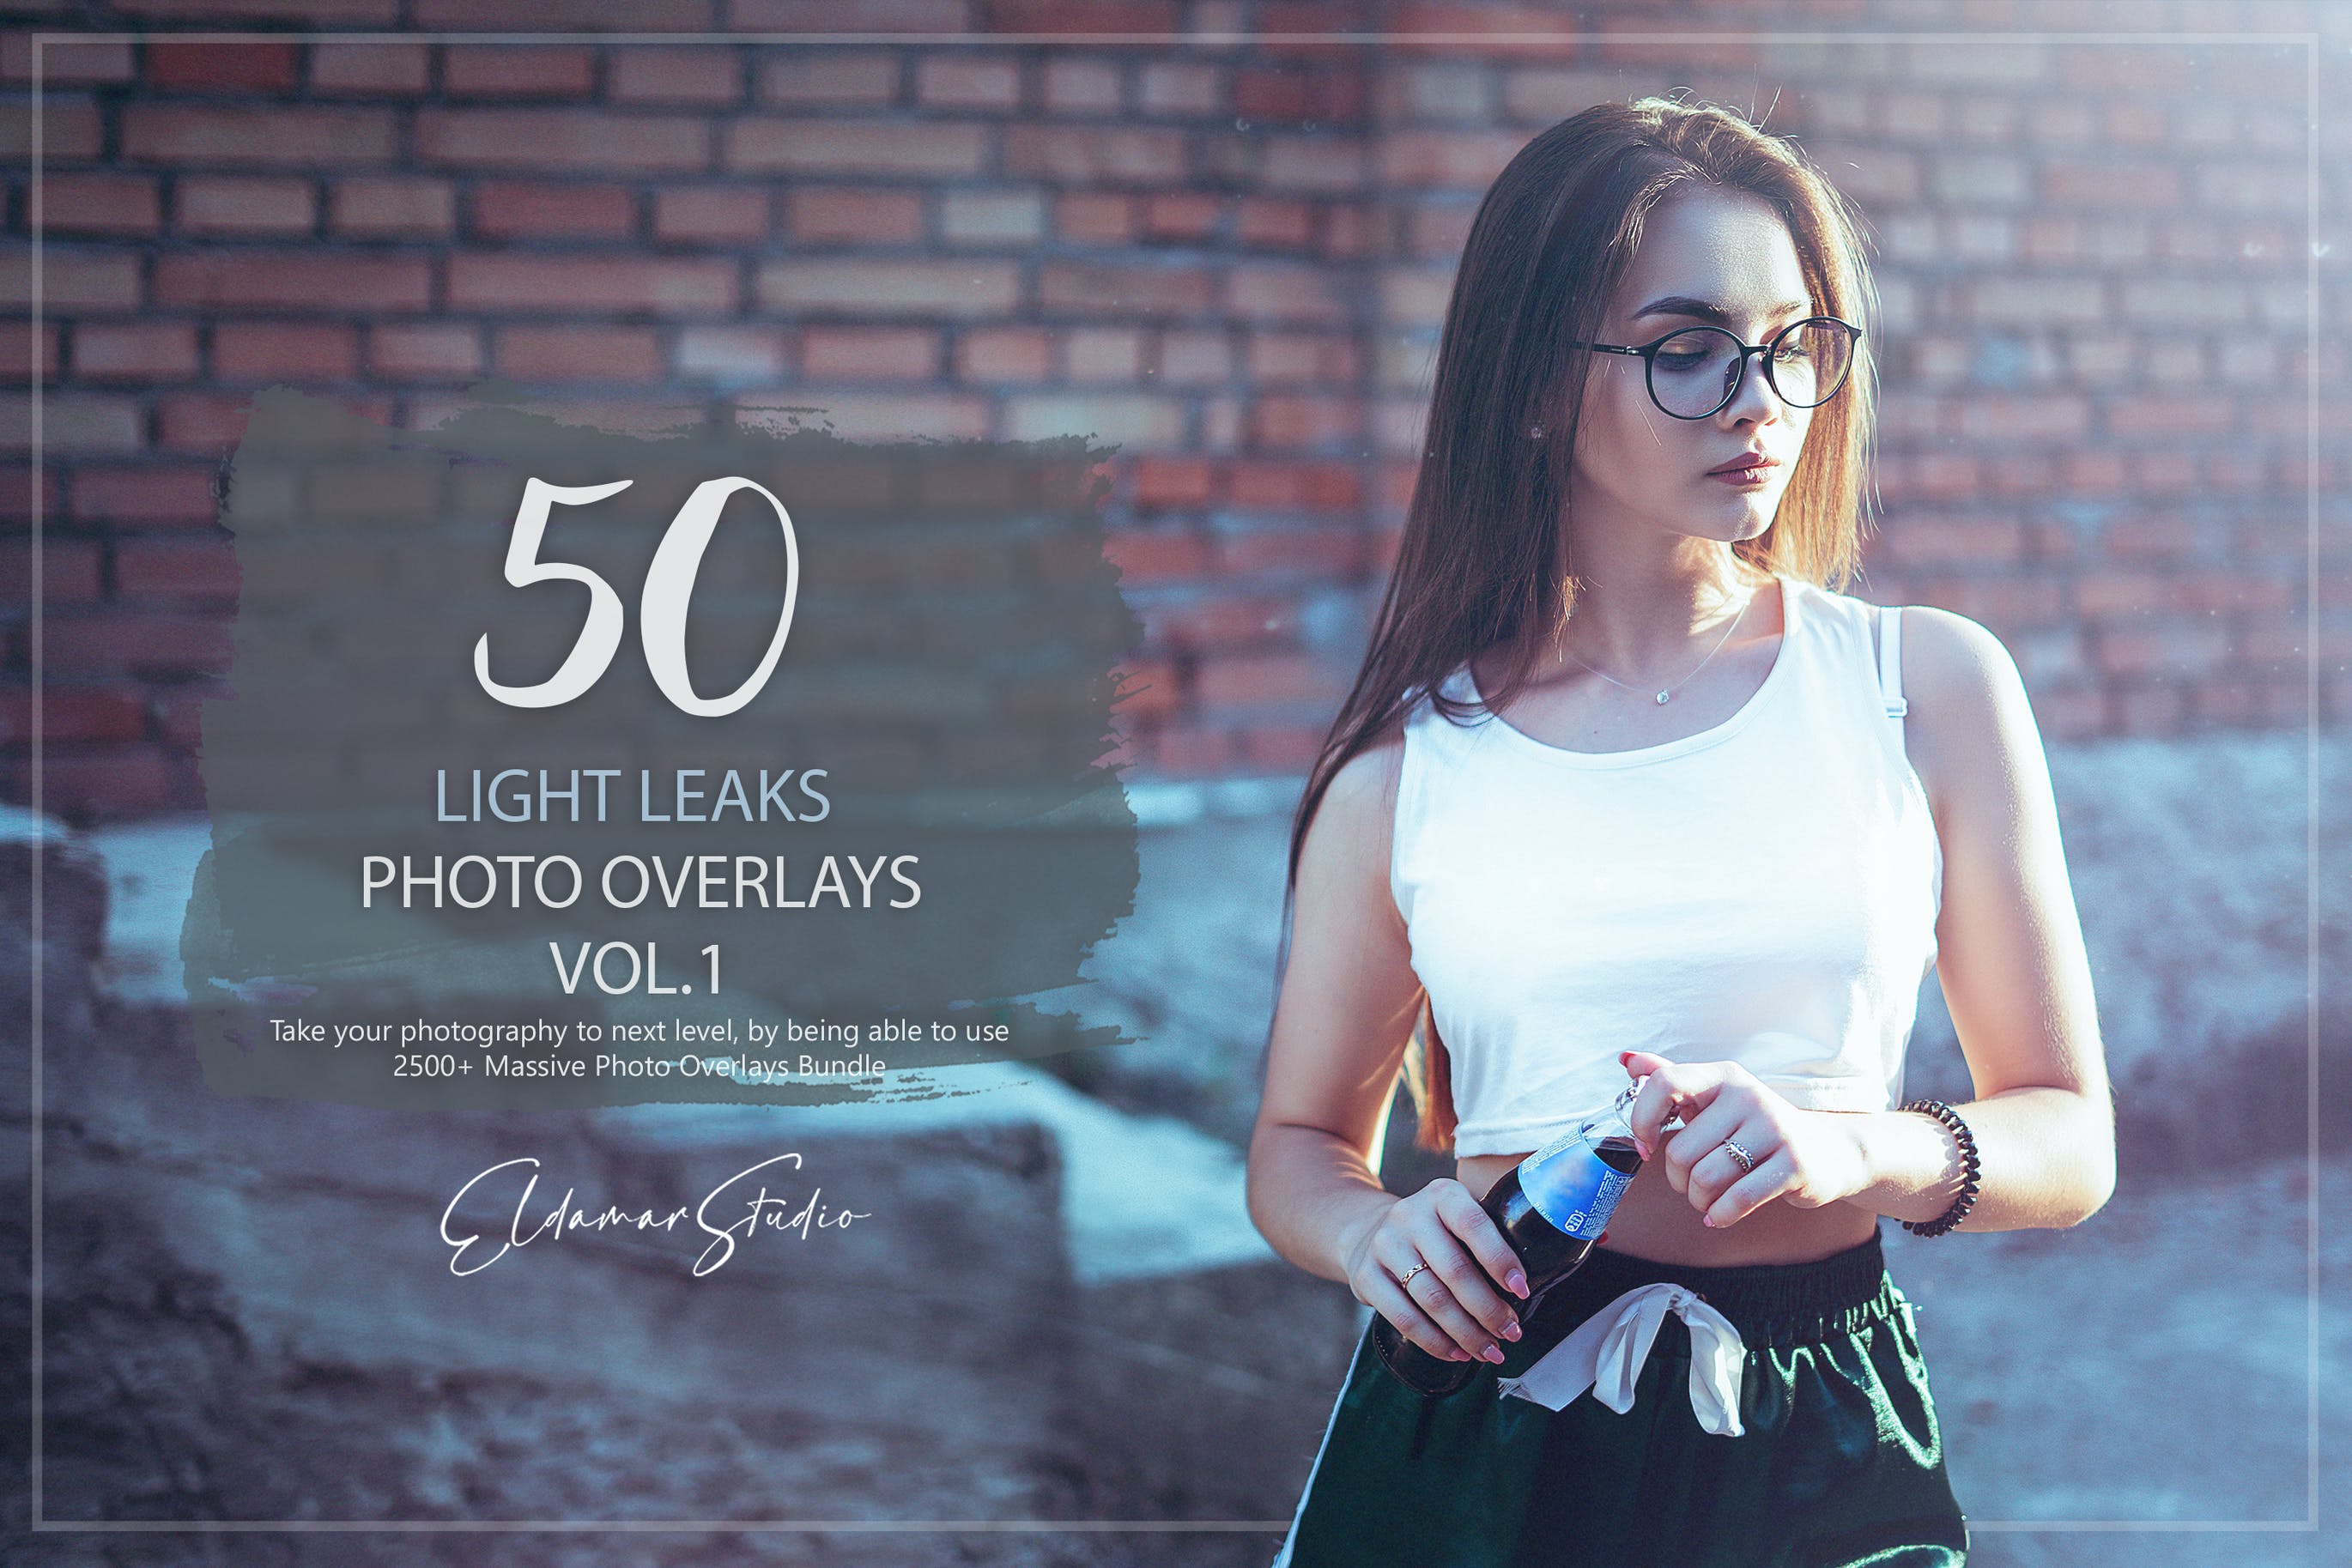 50个漏光照片叠层背景素材v1 50 Light Leaks Photo Overlays – Vol. 1 插件预设 第1张